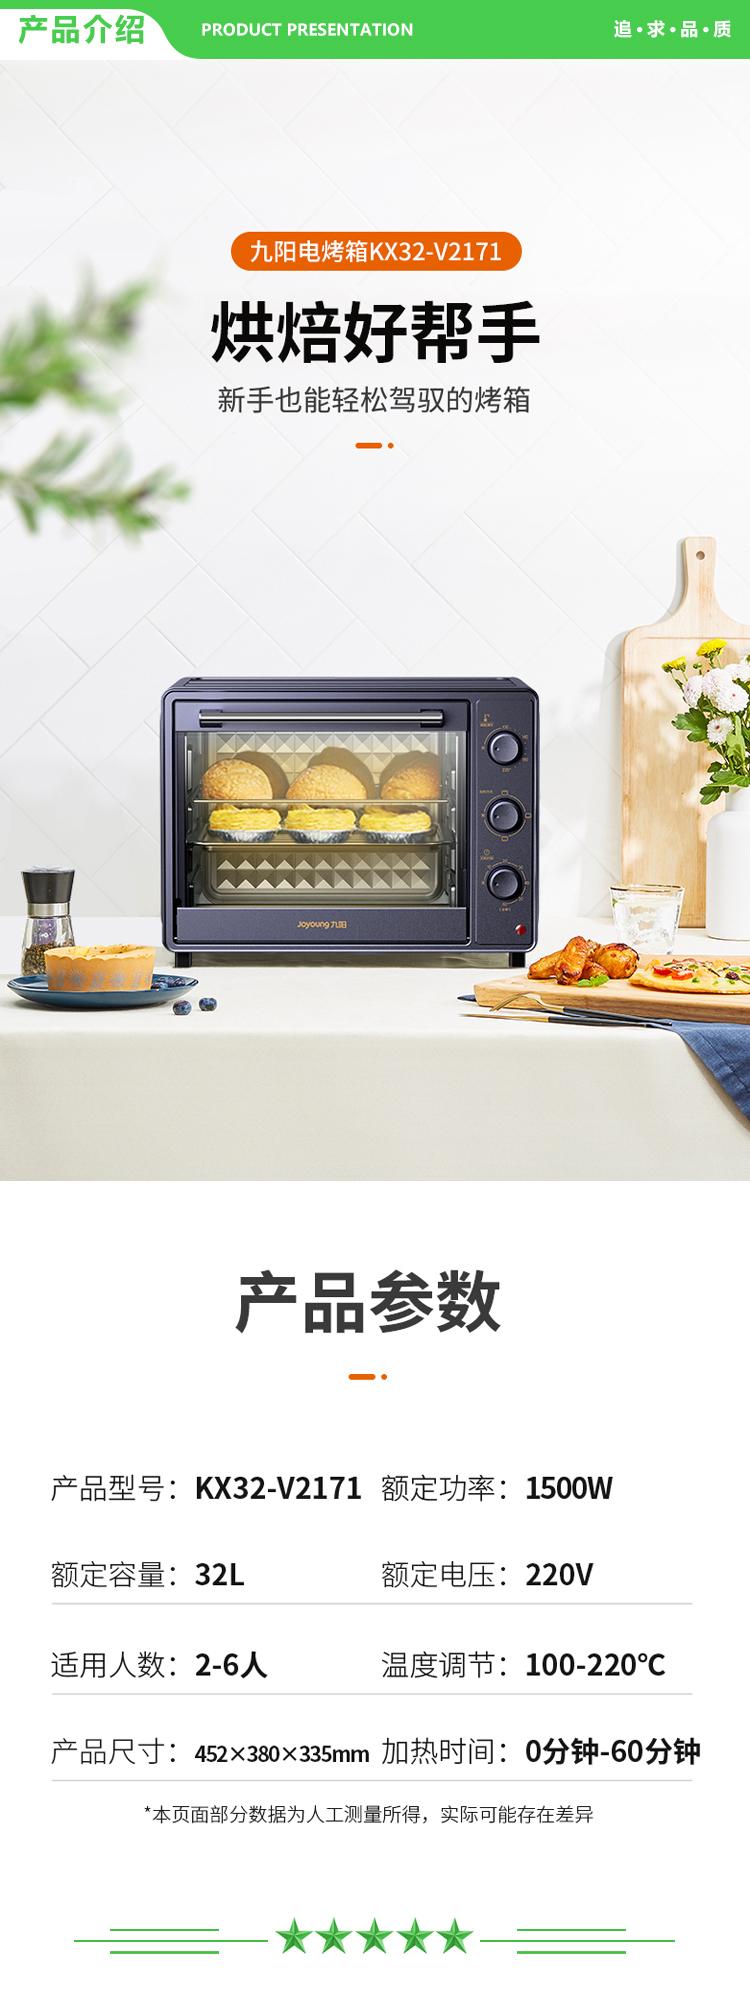 九阳 Joyoung KX32-V2171 电烤箱家用多功能专业32L大容量烘焙电烤箱精准定时控温专业烘焙易操作烘烤面包.jpg